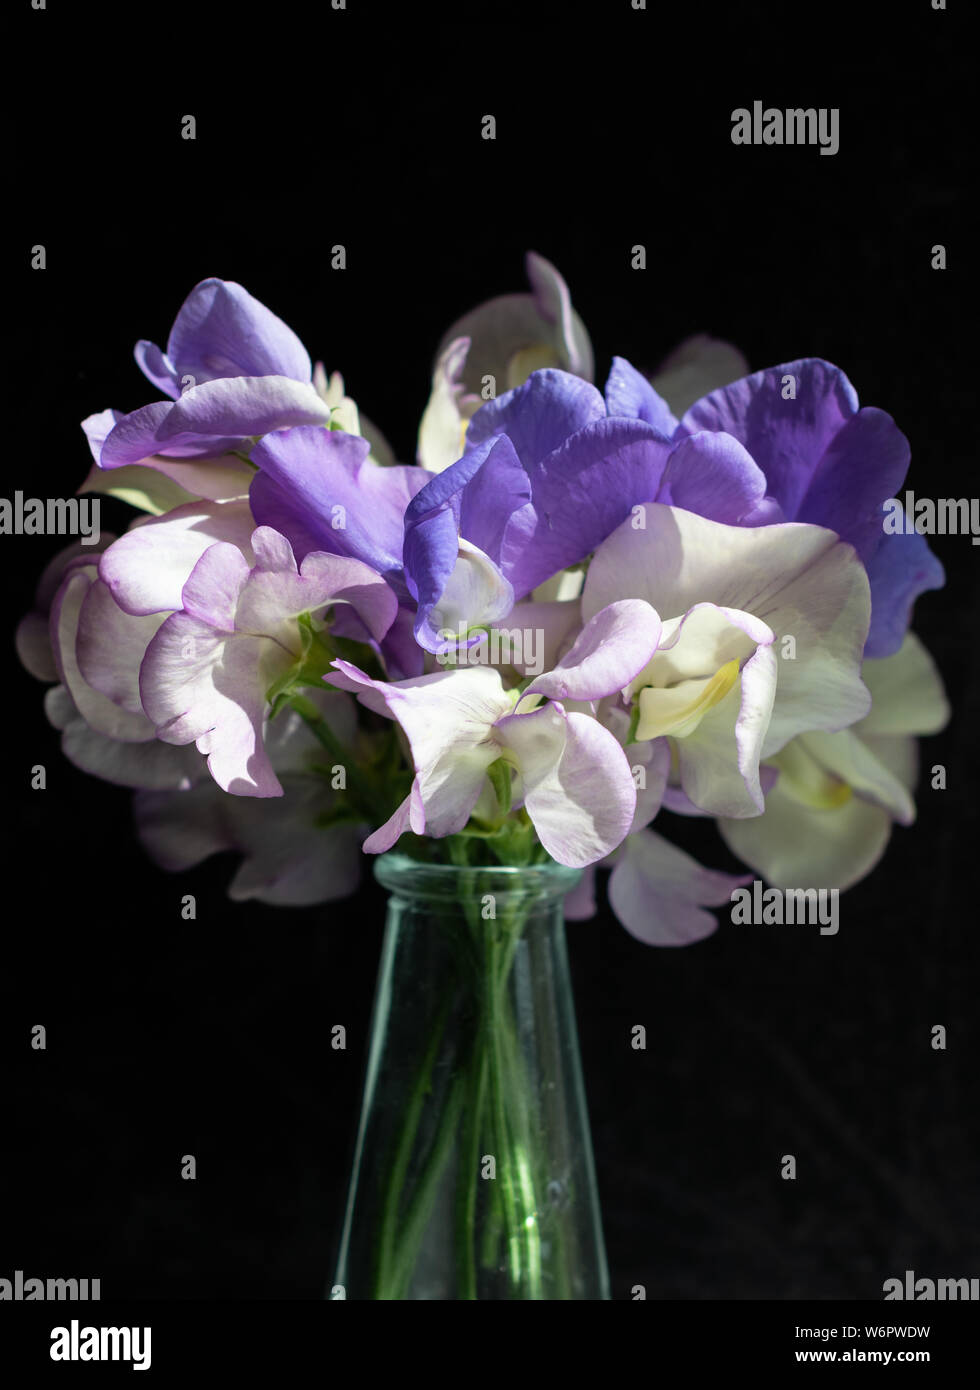 Un petit arrangement lâche de pois sucré mixte dans les tons de blanc et violet contre un fond texturé noir Banque D'Images